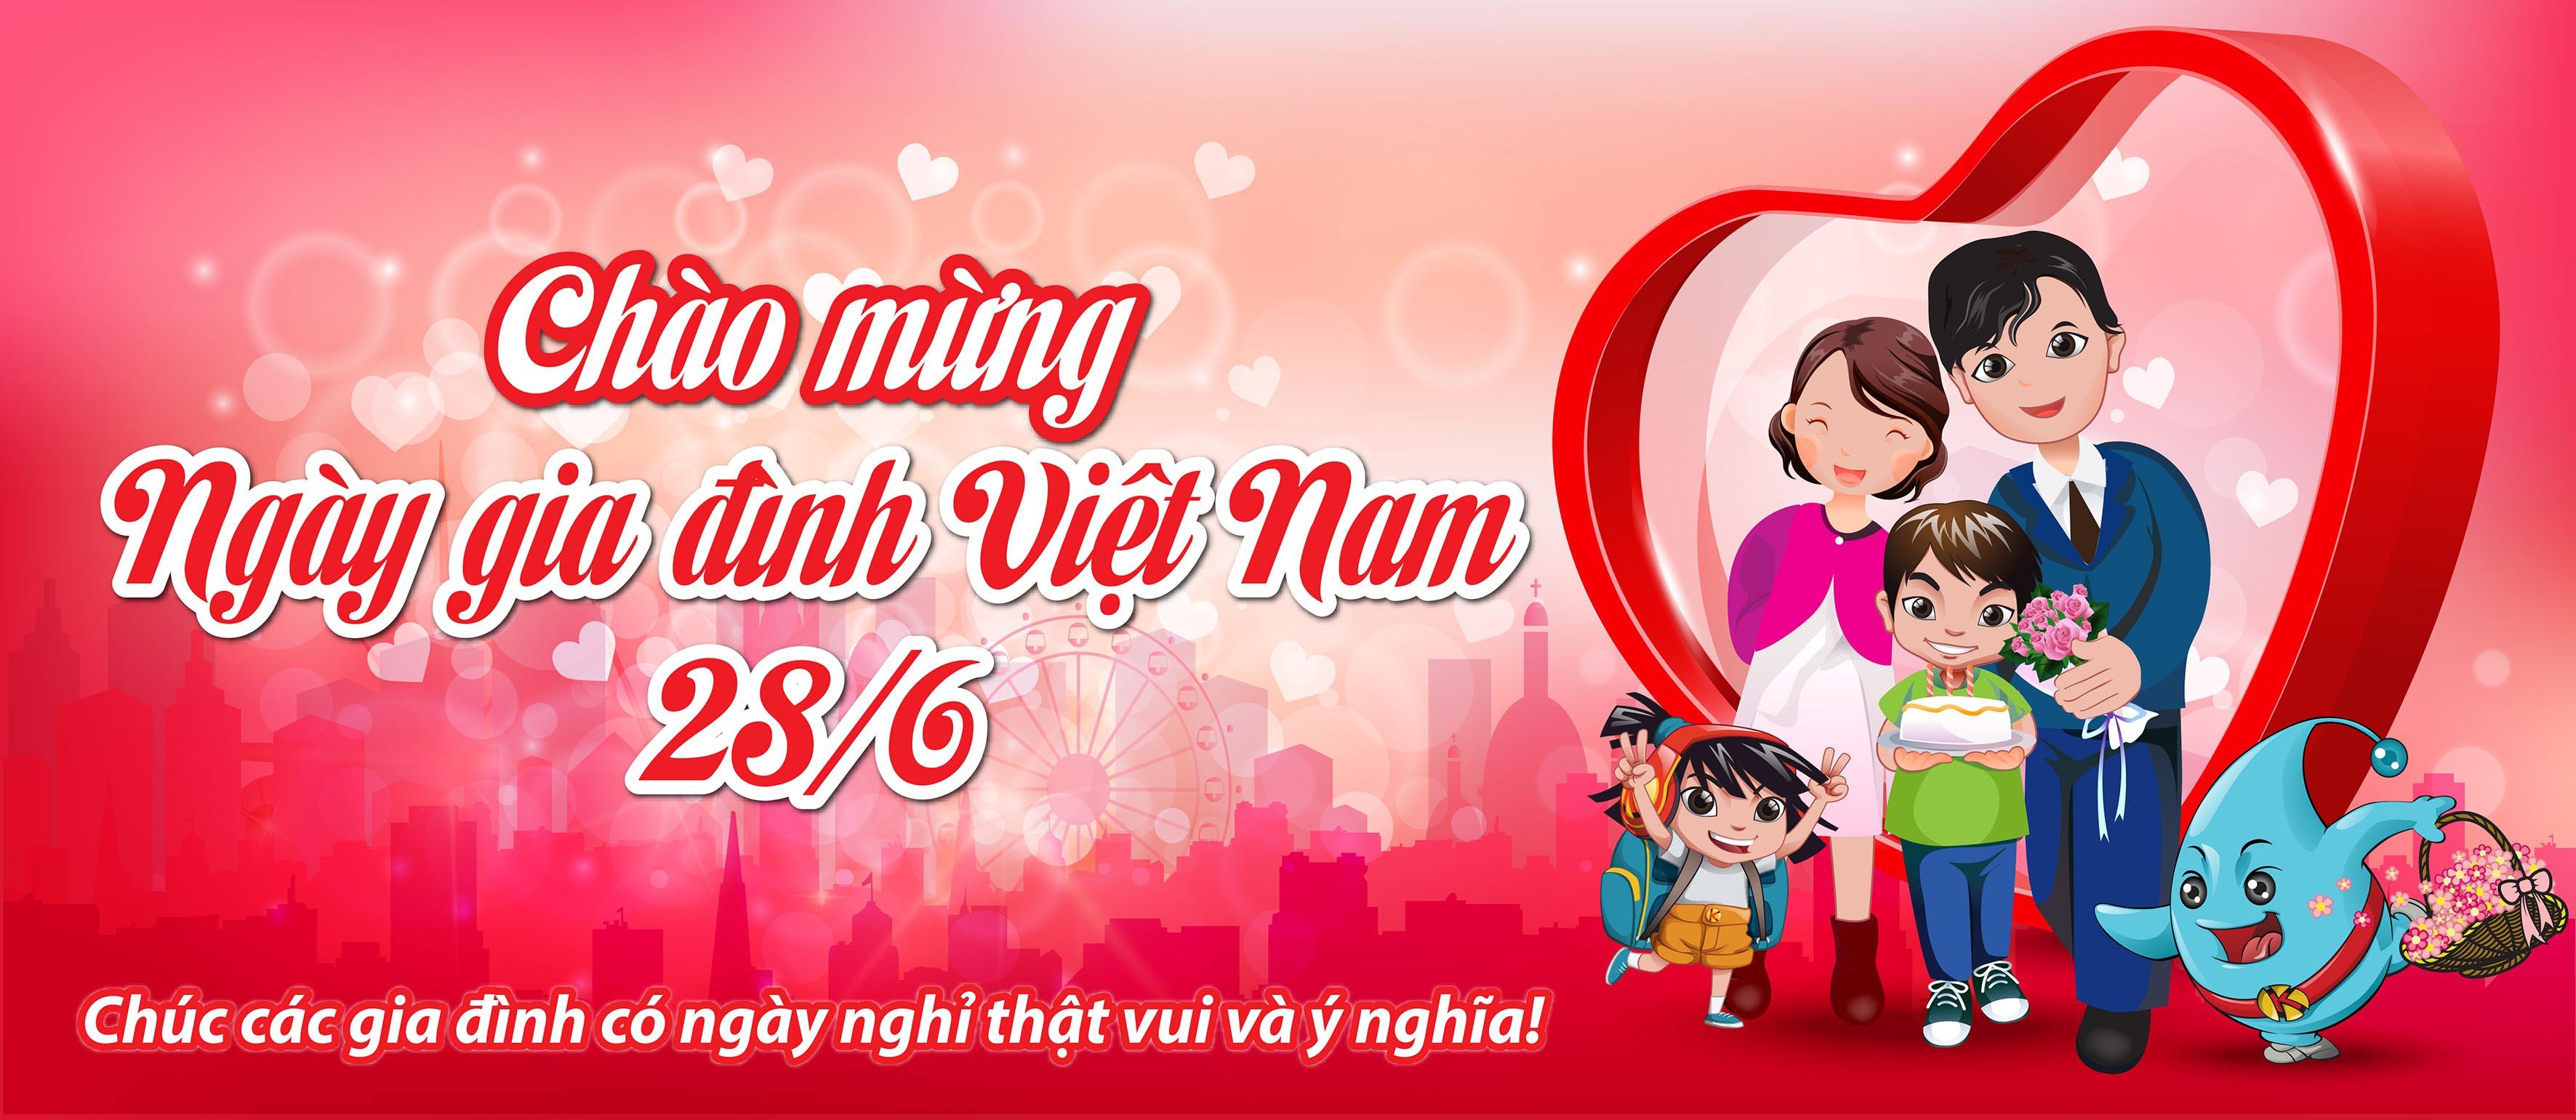 Chúc Mừng Ngày Hội Gia đình Việt Nam 2862018 8946